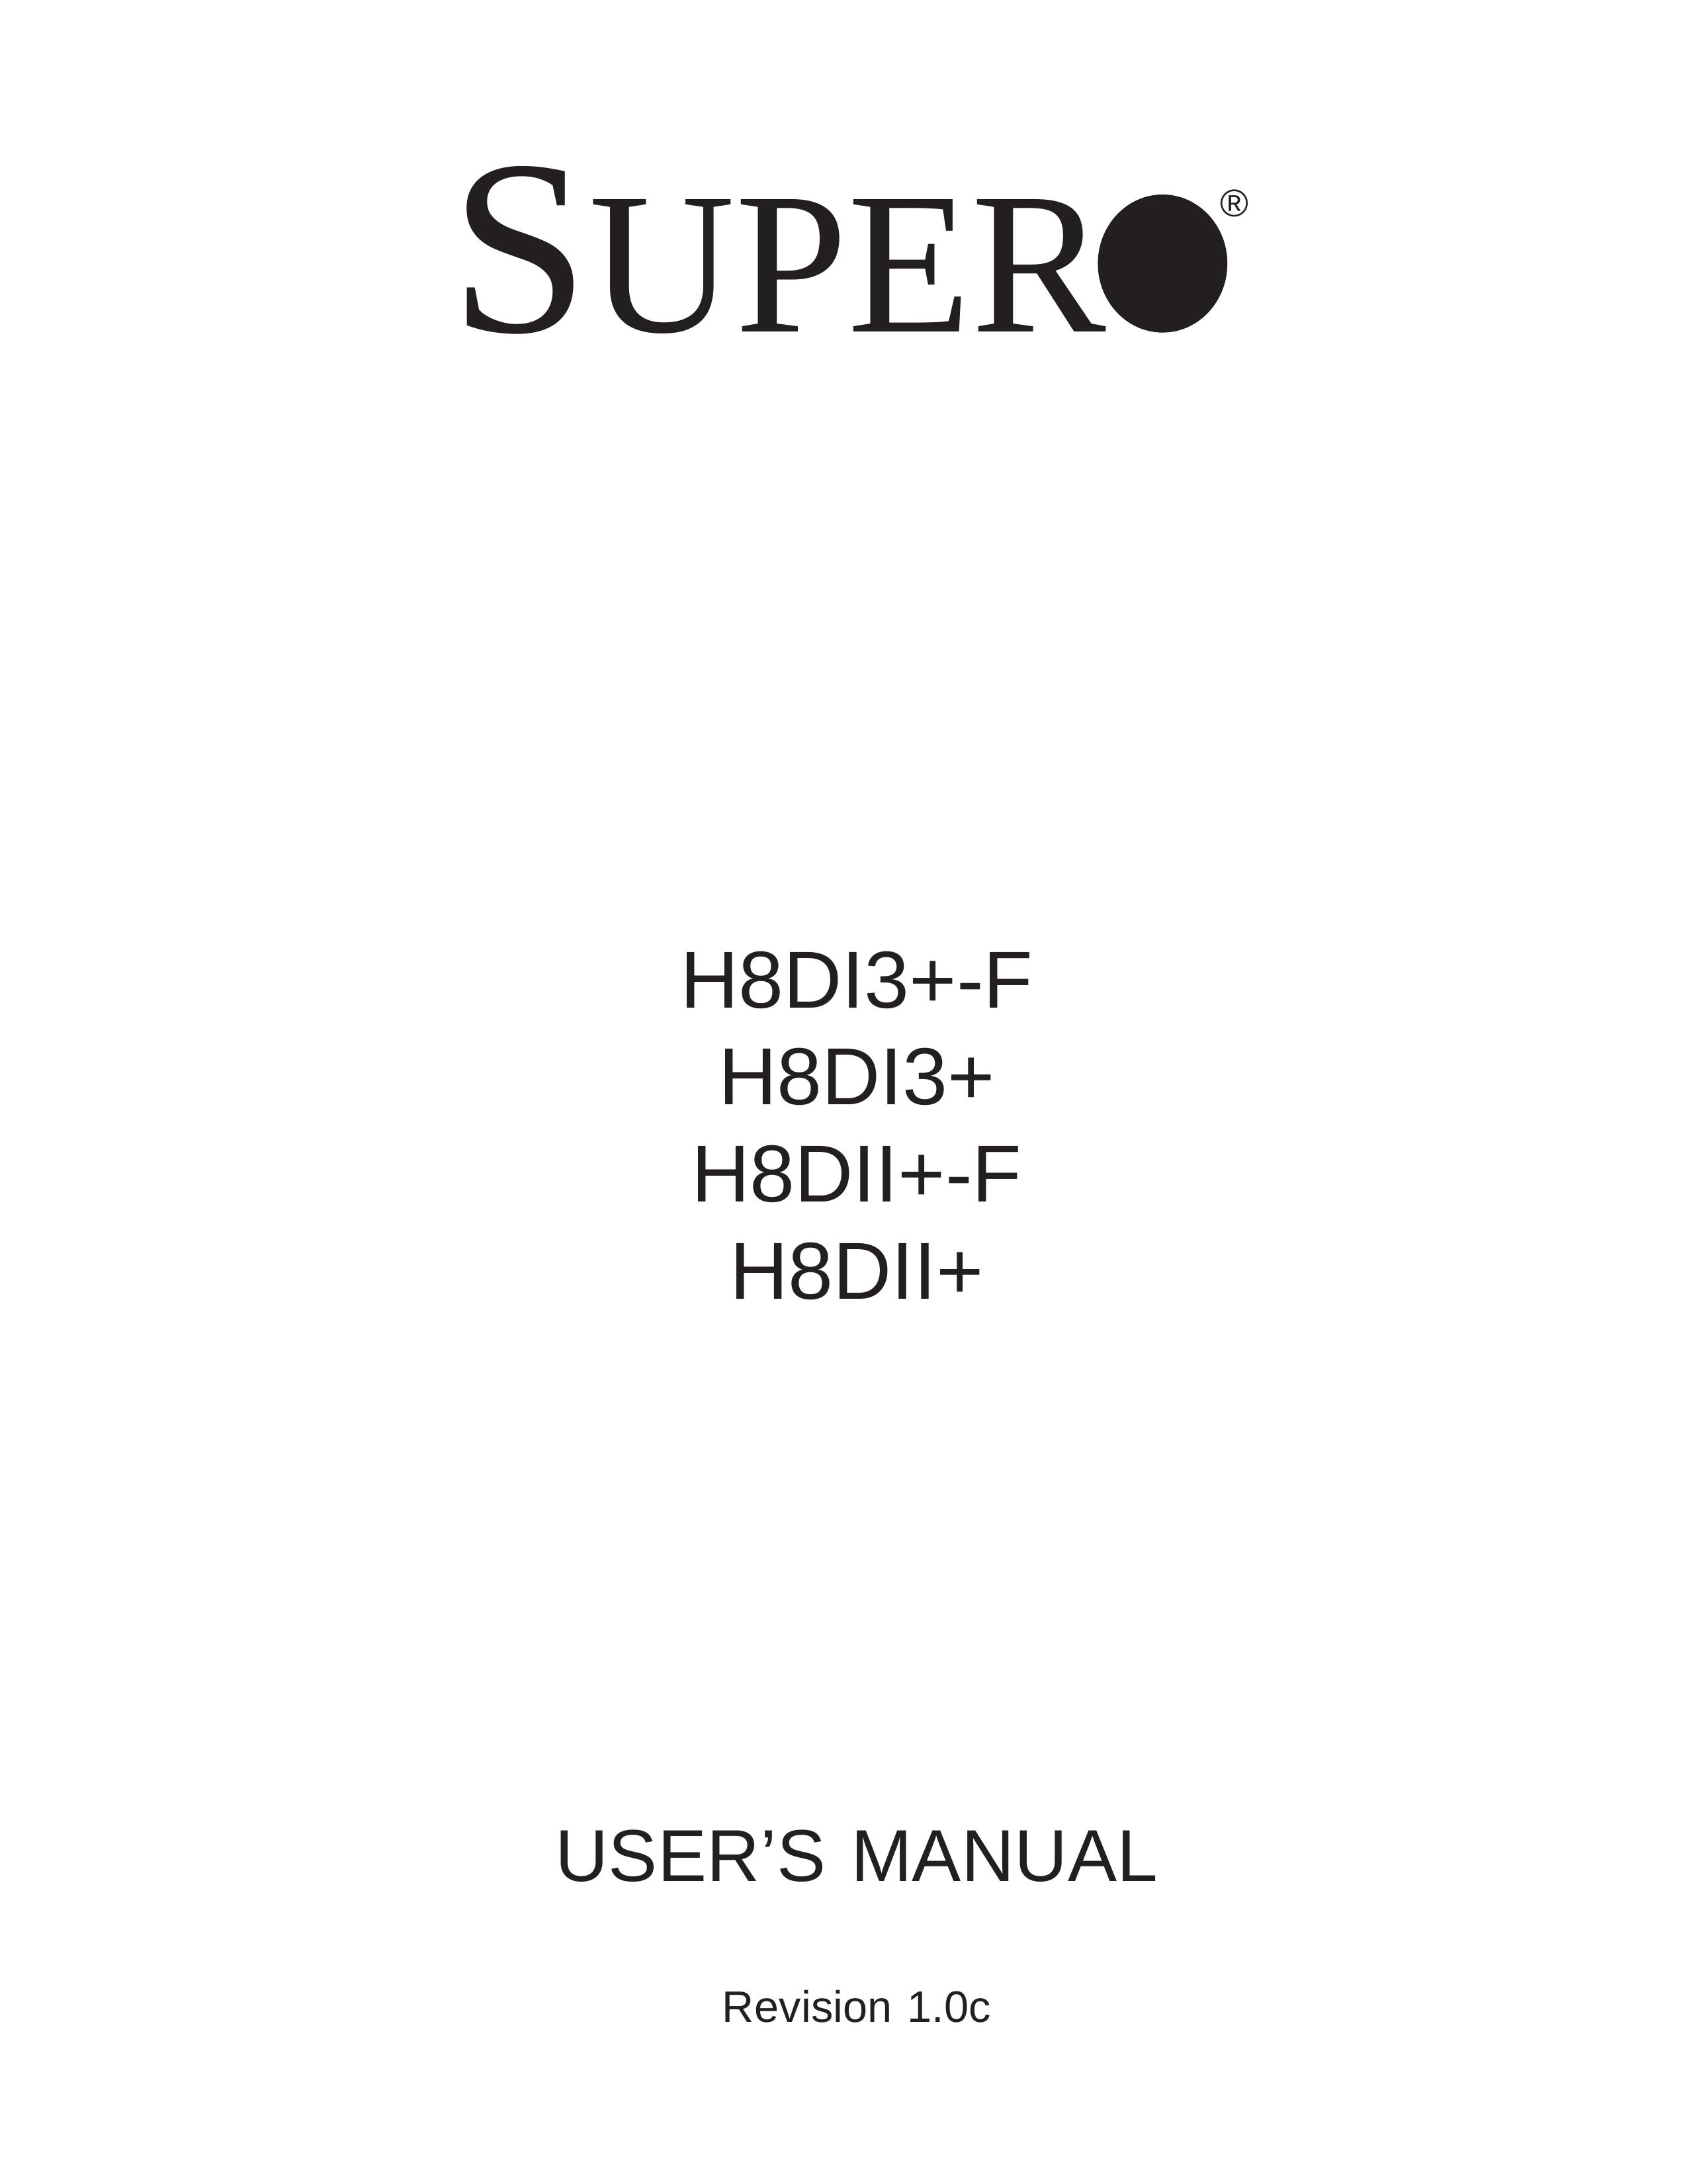 SUPER MICRO Computer H8DI3+-F Security Camera User Manual